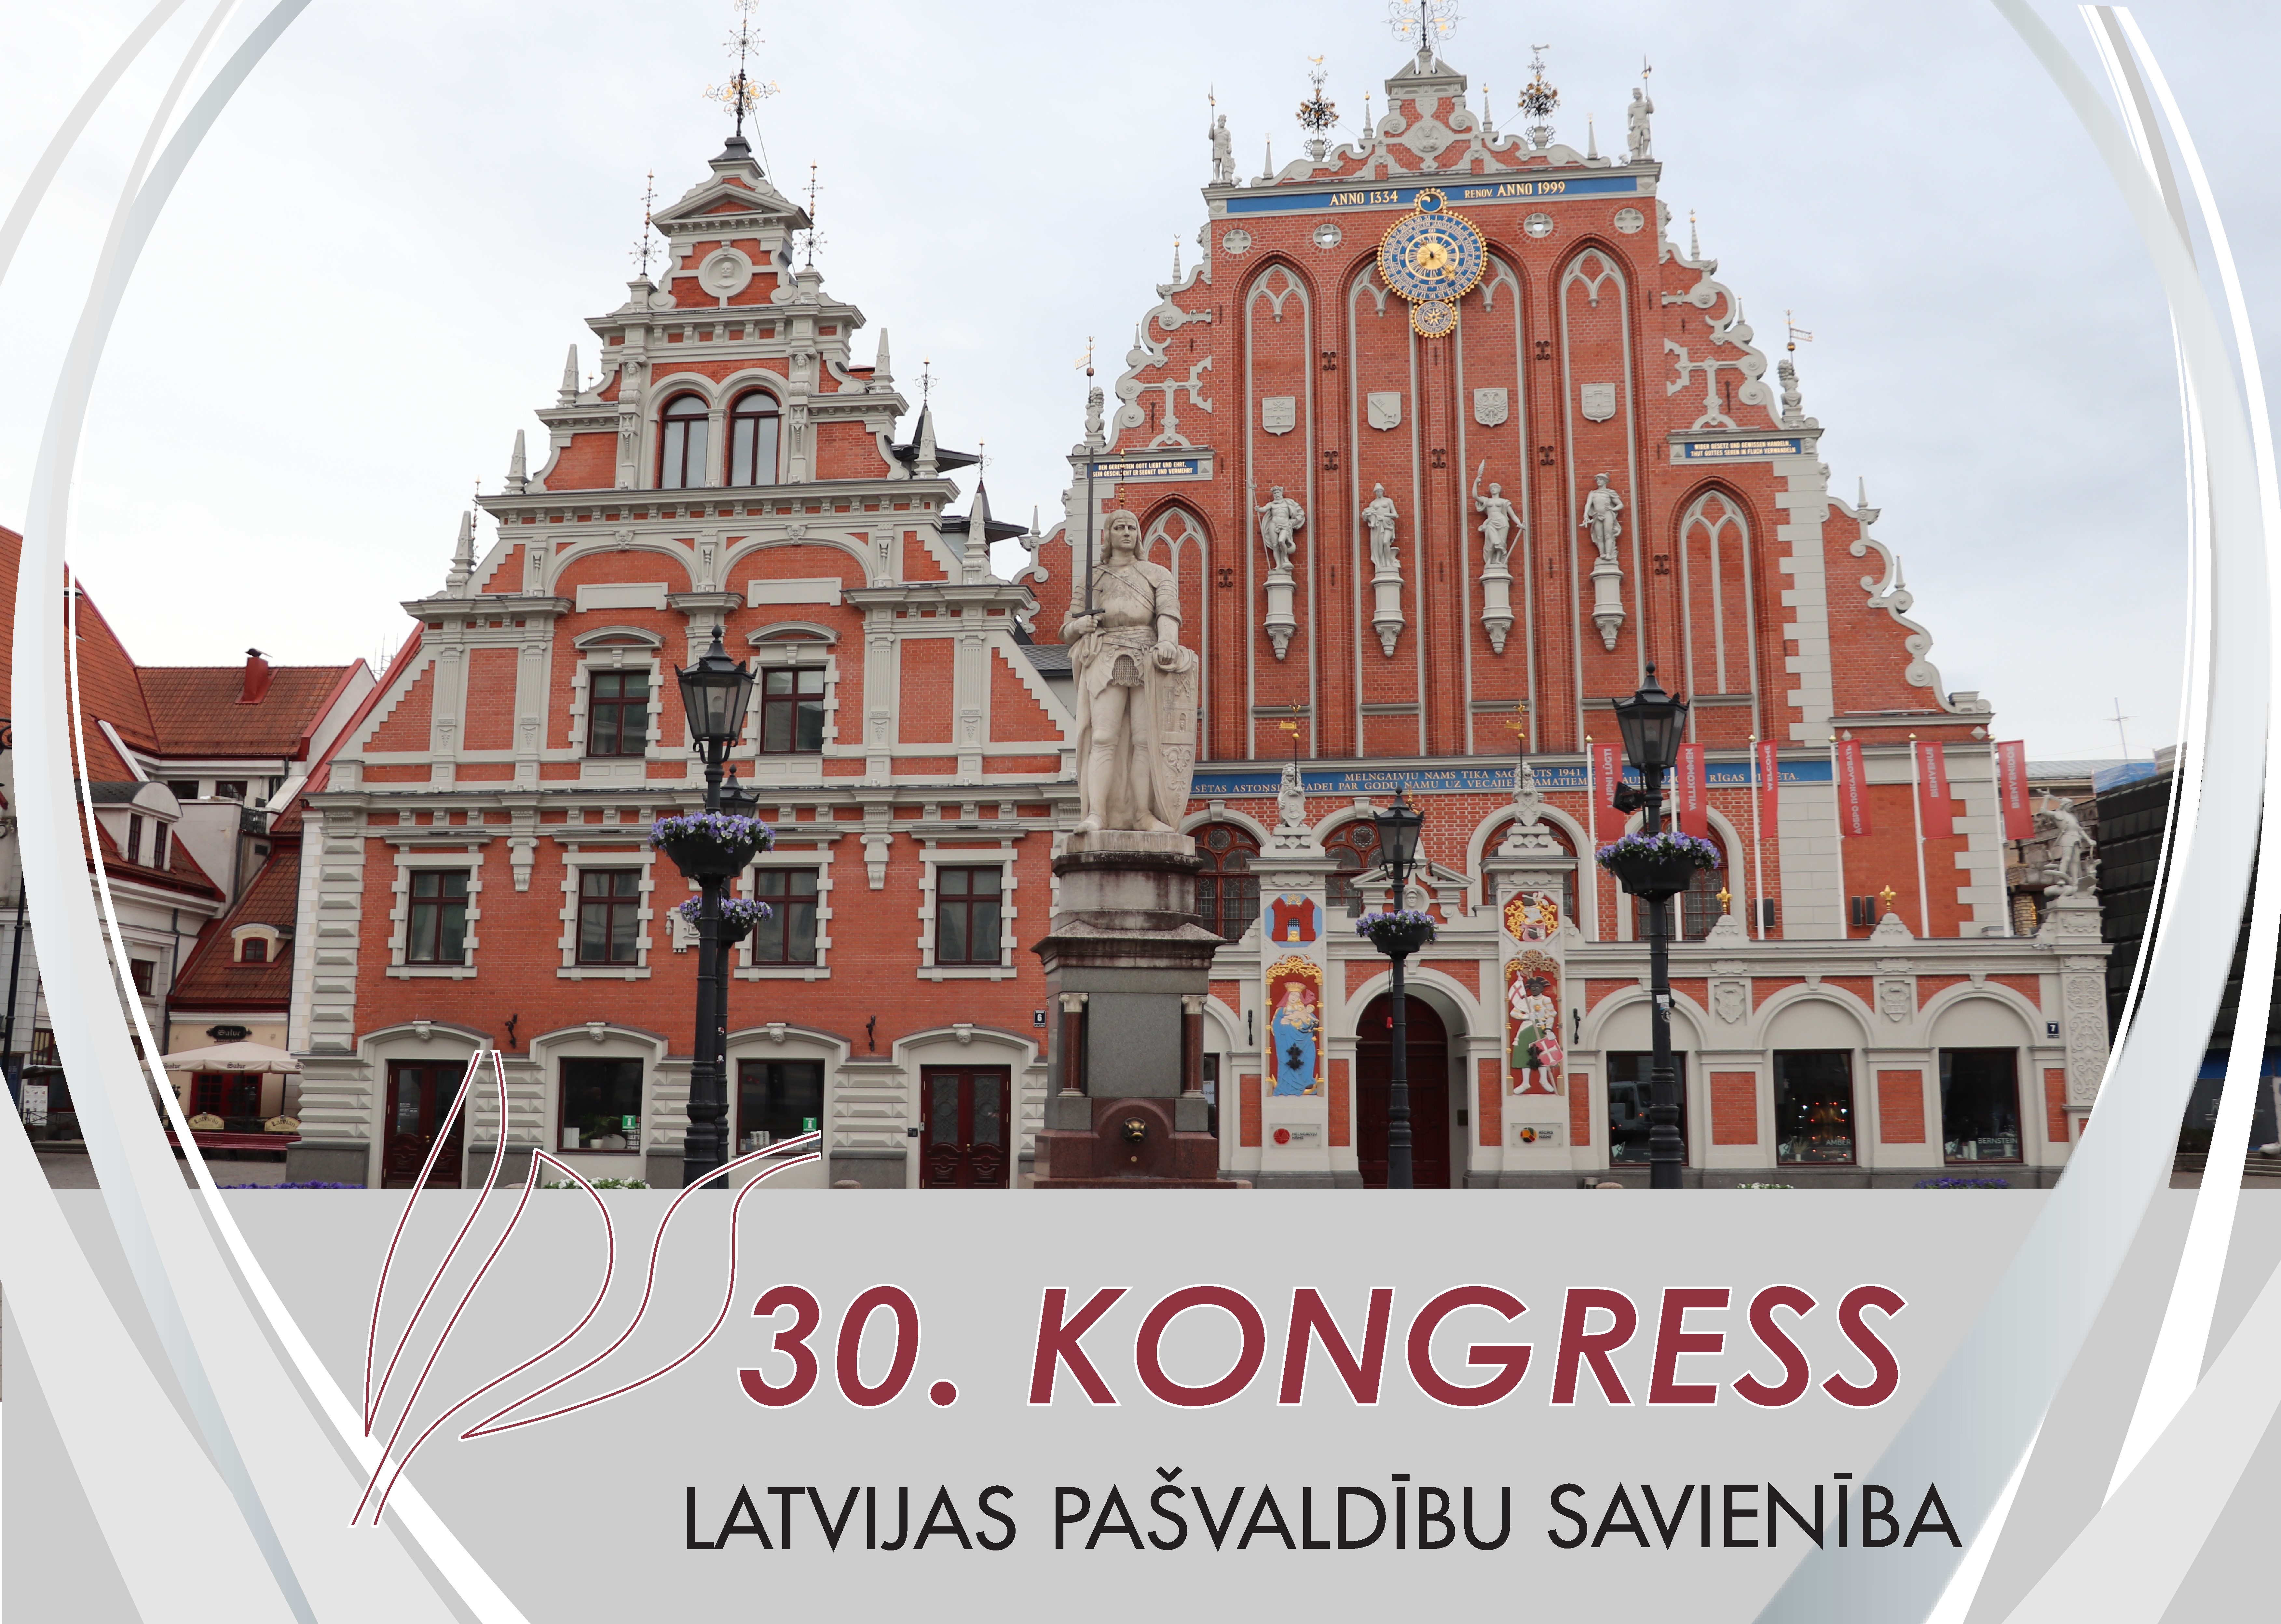 Latvijas Pašvaldību savienības jubilejas – 30. – kongress šogad notiks Rīgā